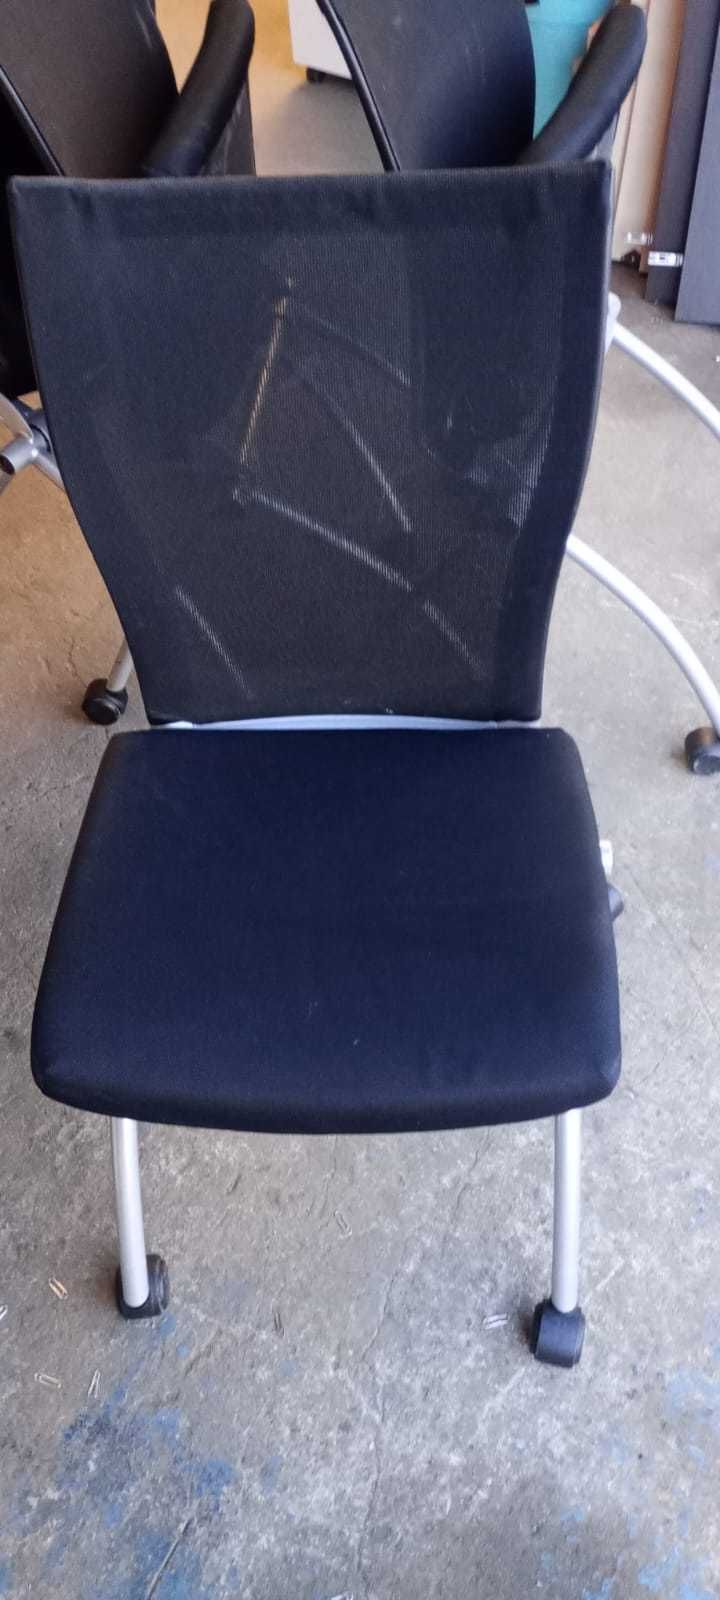 Krzesło konfernecyjne Haworth Comforto czarne krzesło biurowe krzesła